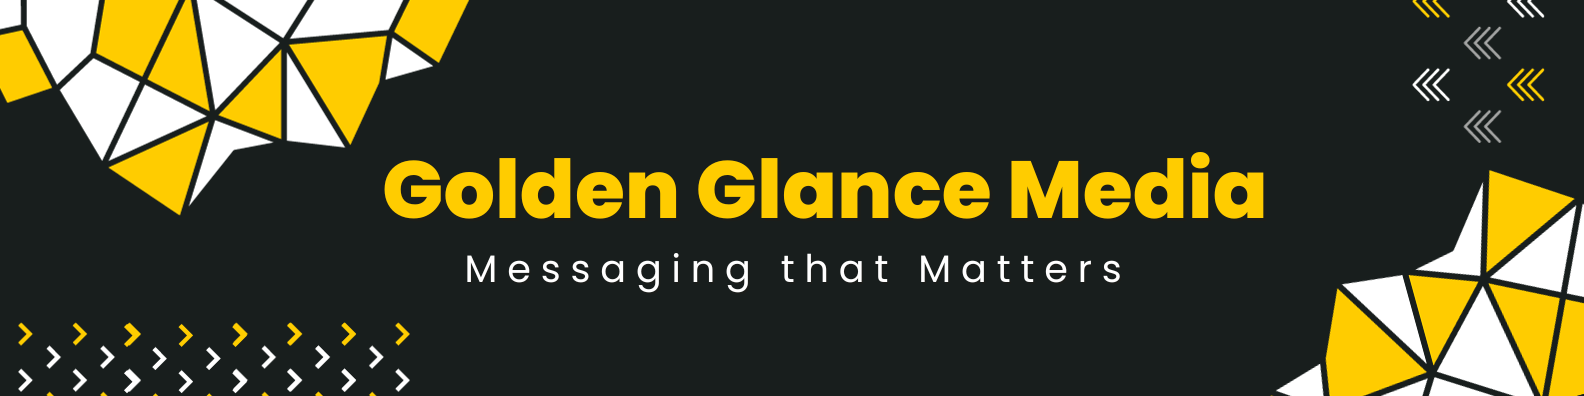 Golden Glance Media